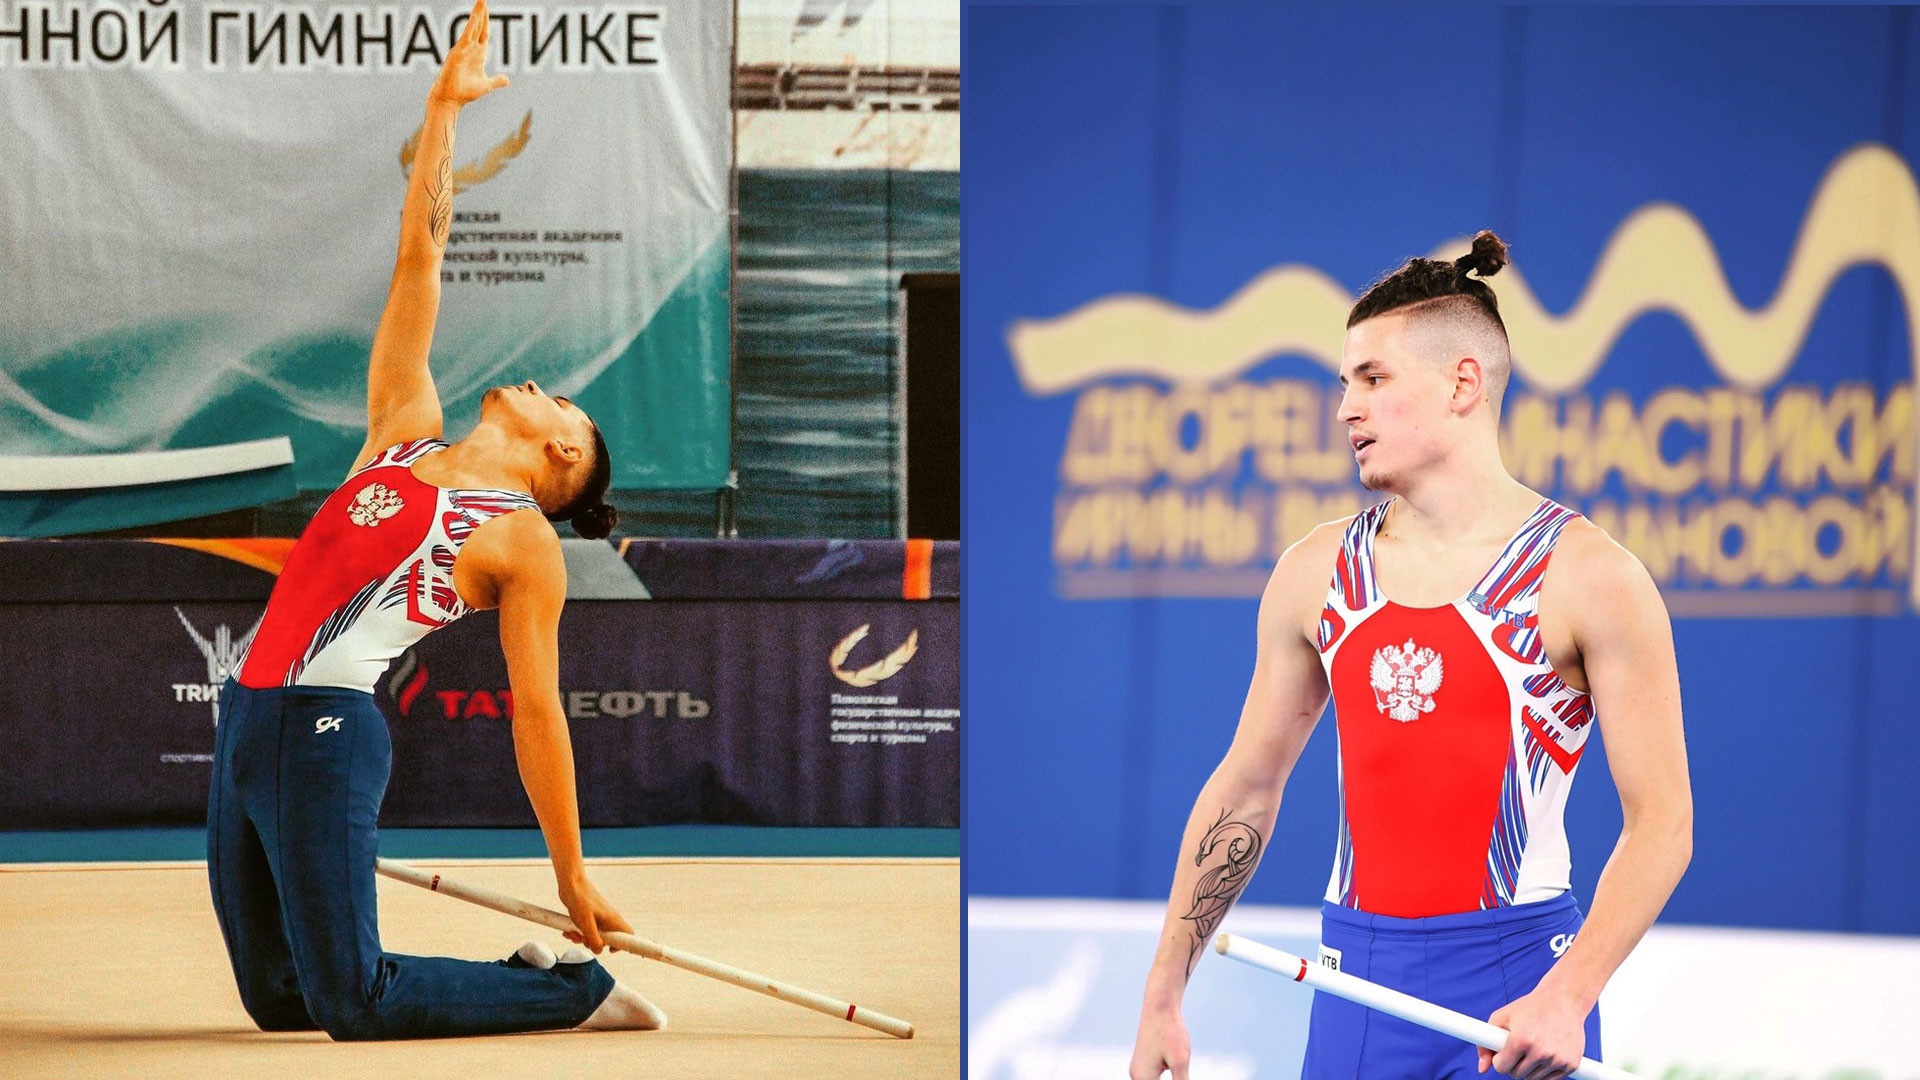 La ginnastica ritmica maschile in Russia, tra primi successi e tanti tabù -  Russia Beyond - Italia